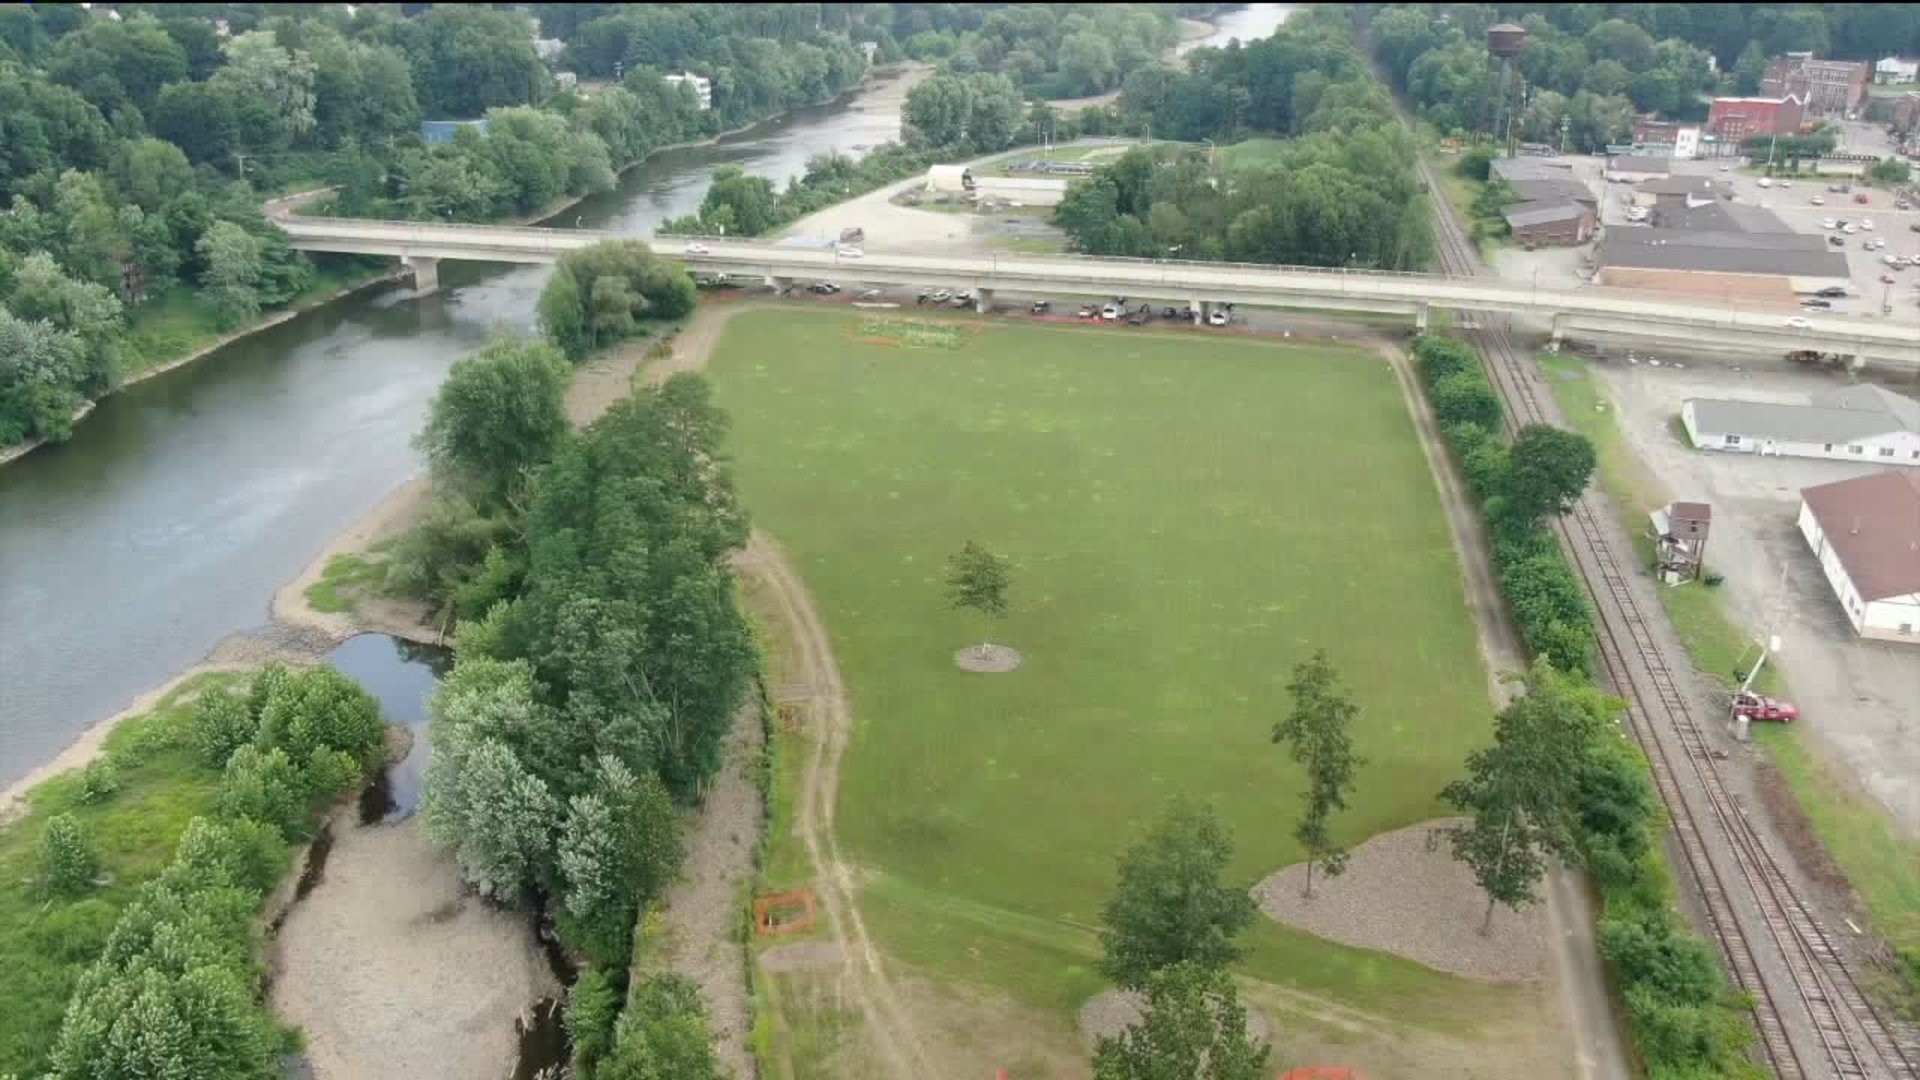 Empty Field, No Park in Susquehanna